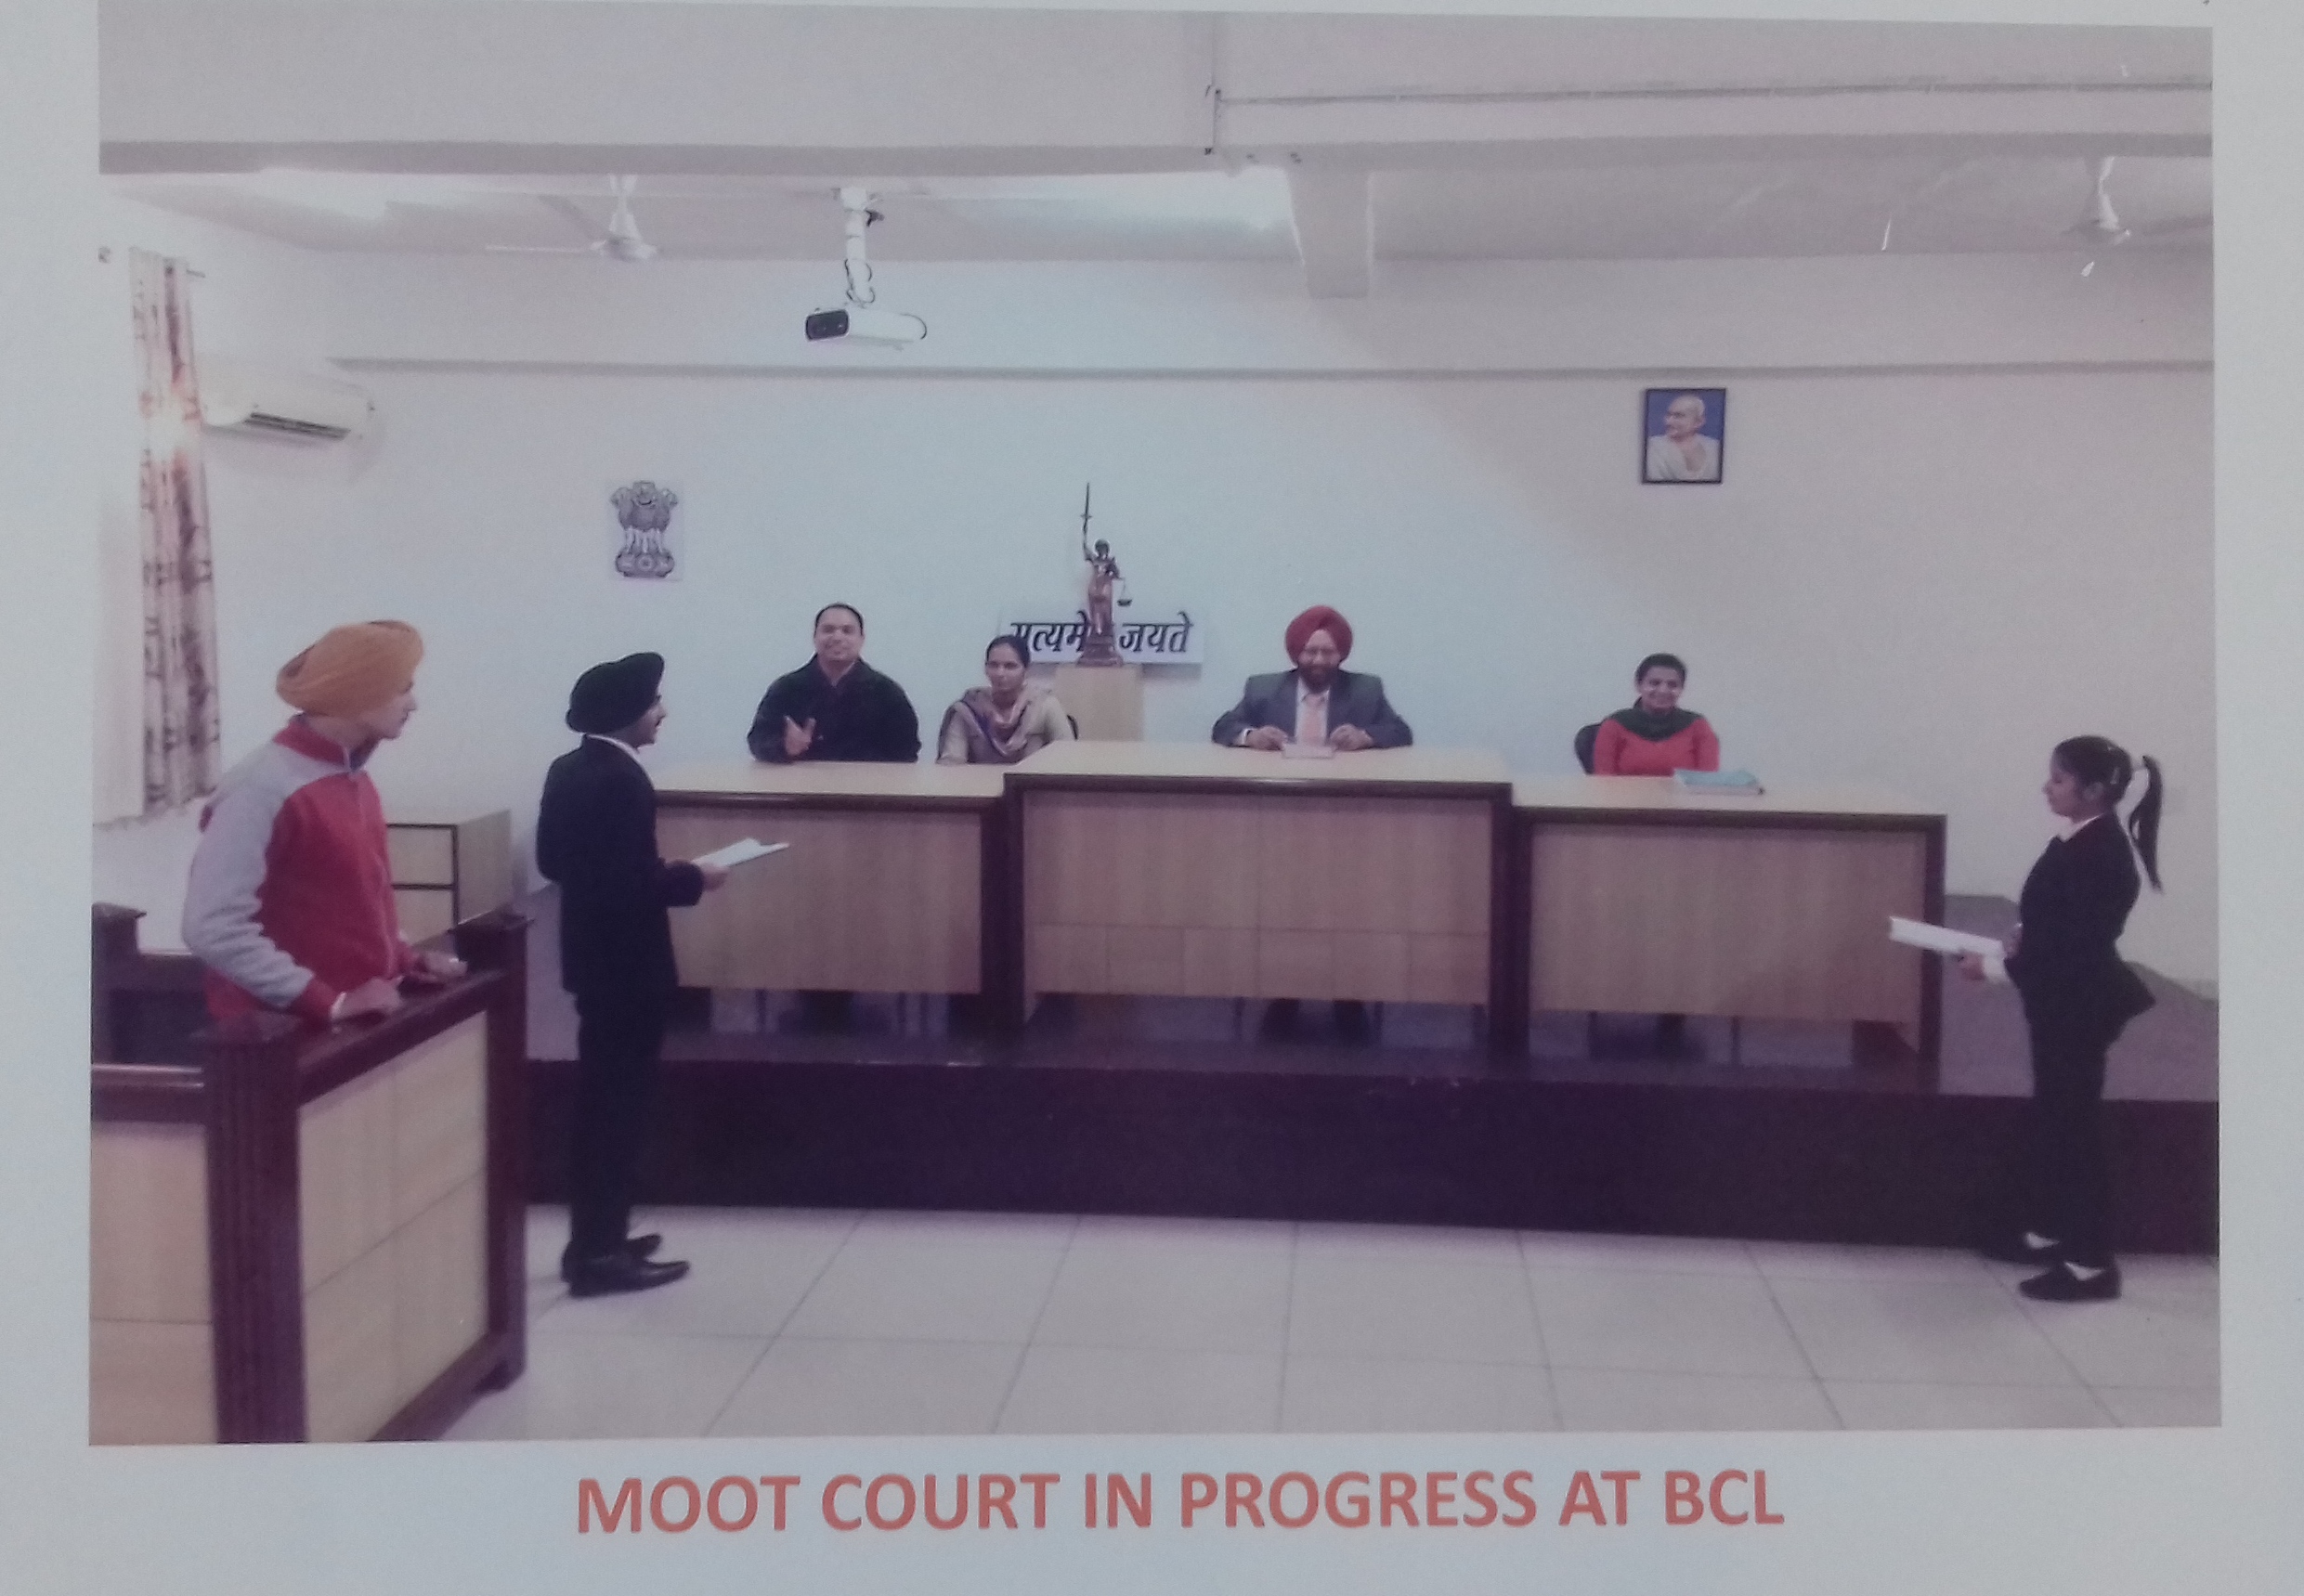 Moot court in progress